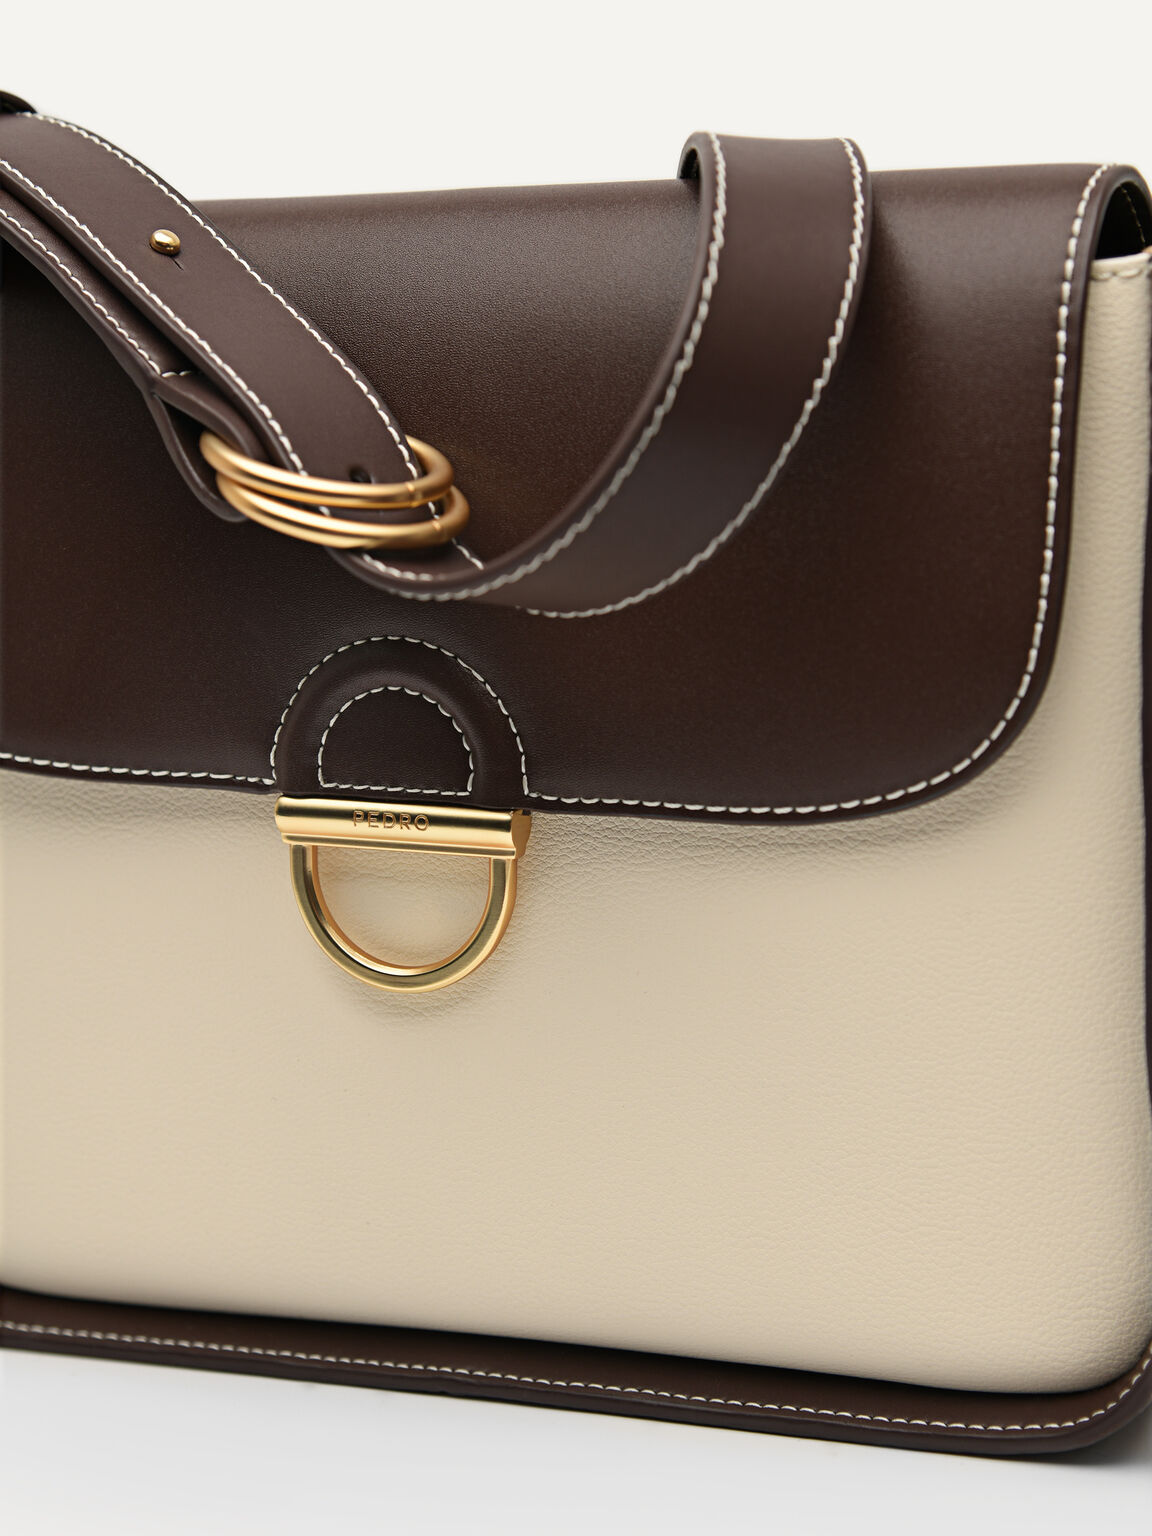 Jean Leather Satchel Bag, Multi